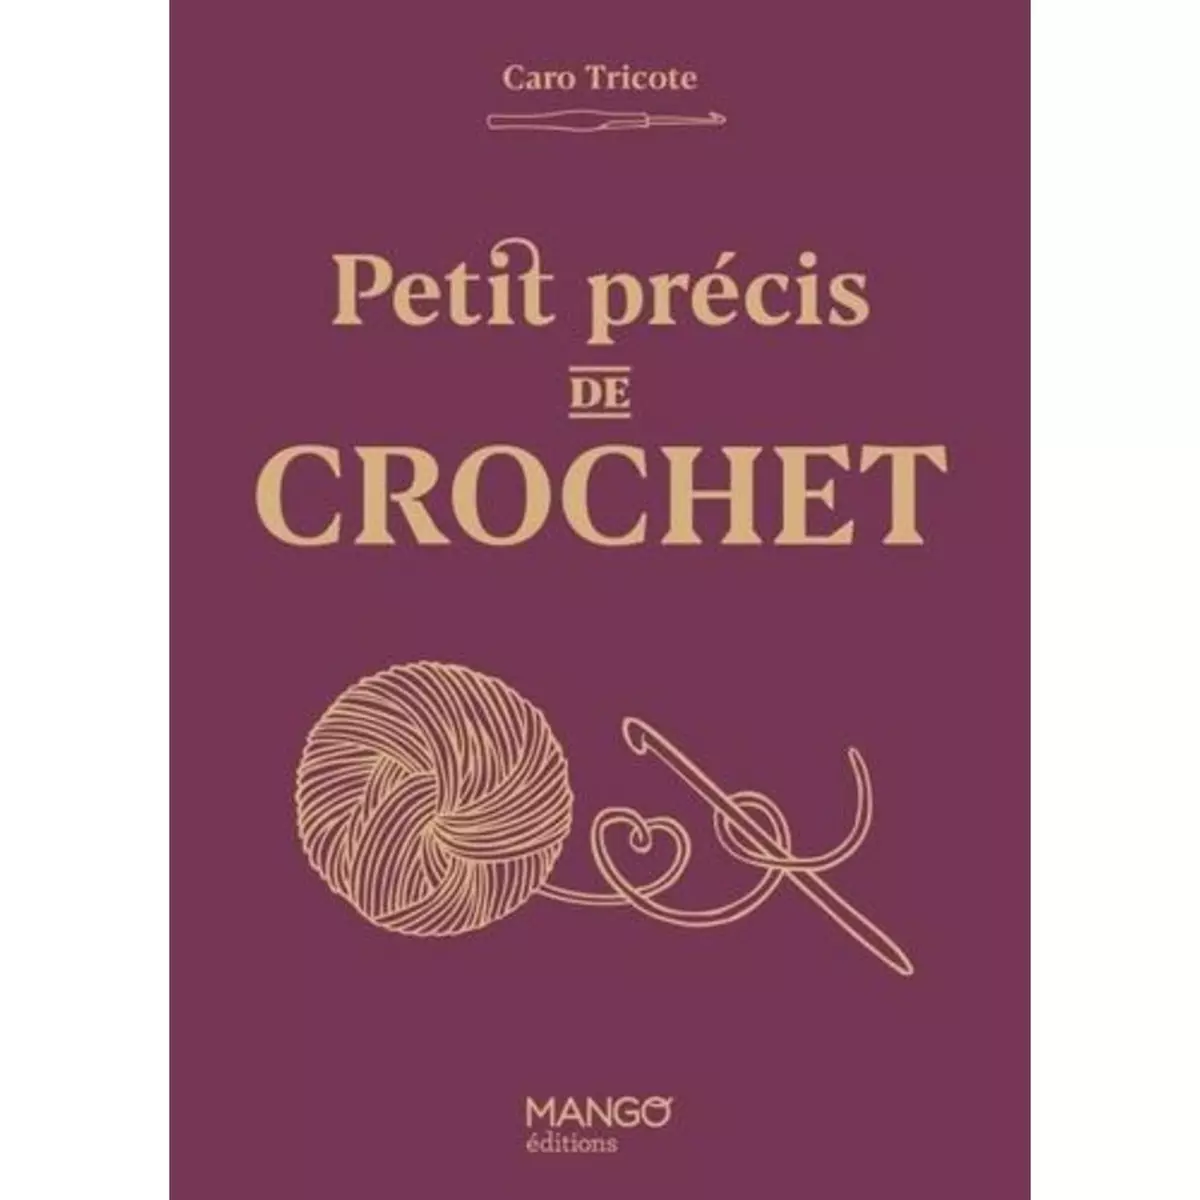  PETIT PRECIS DE CROCHET, Caro Tricote